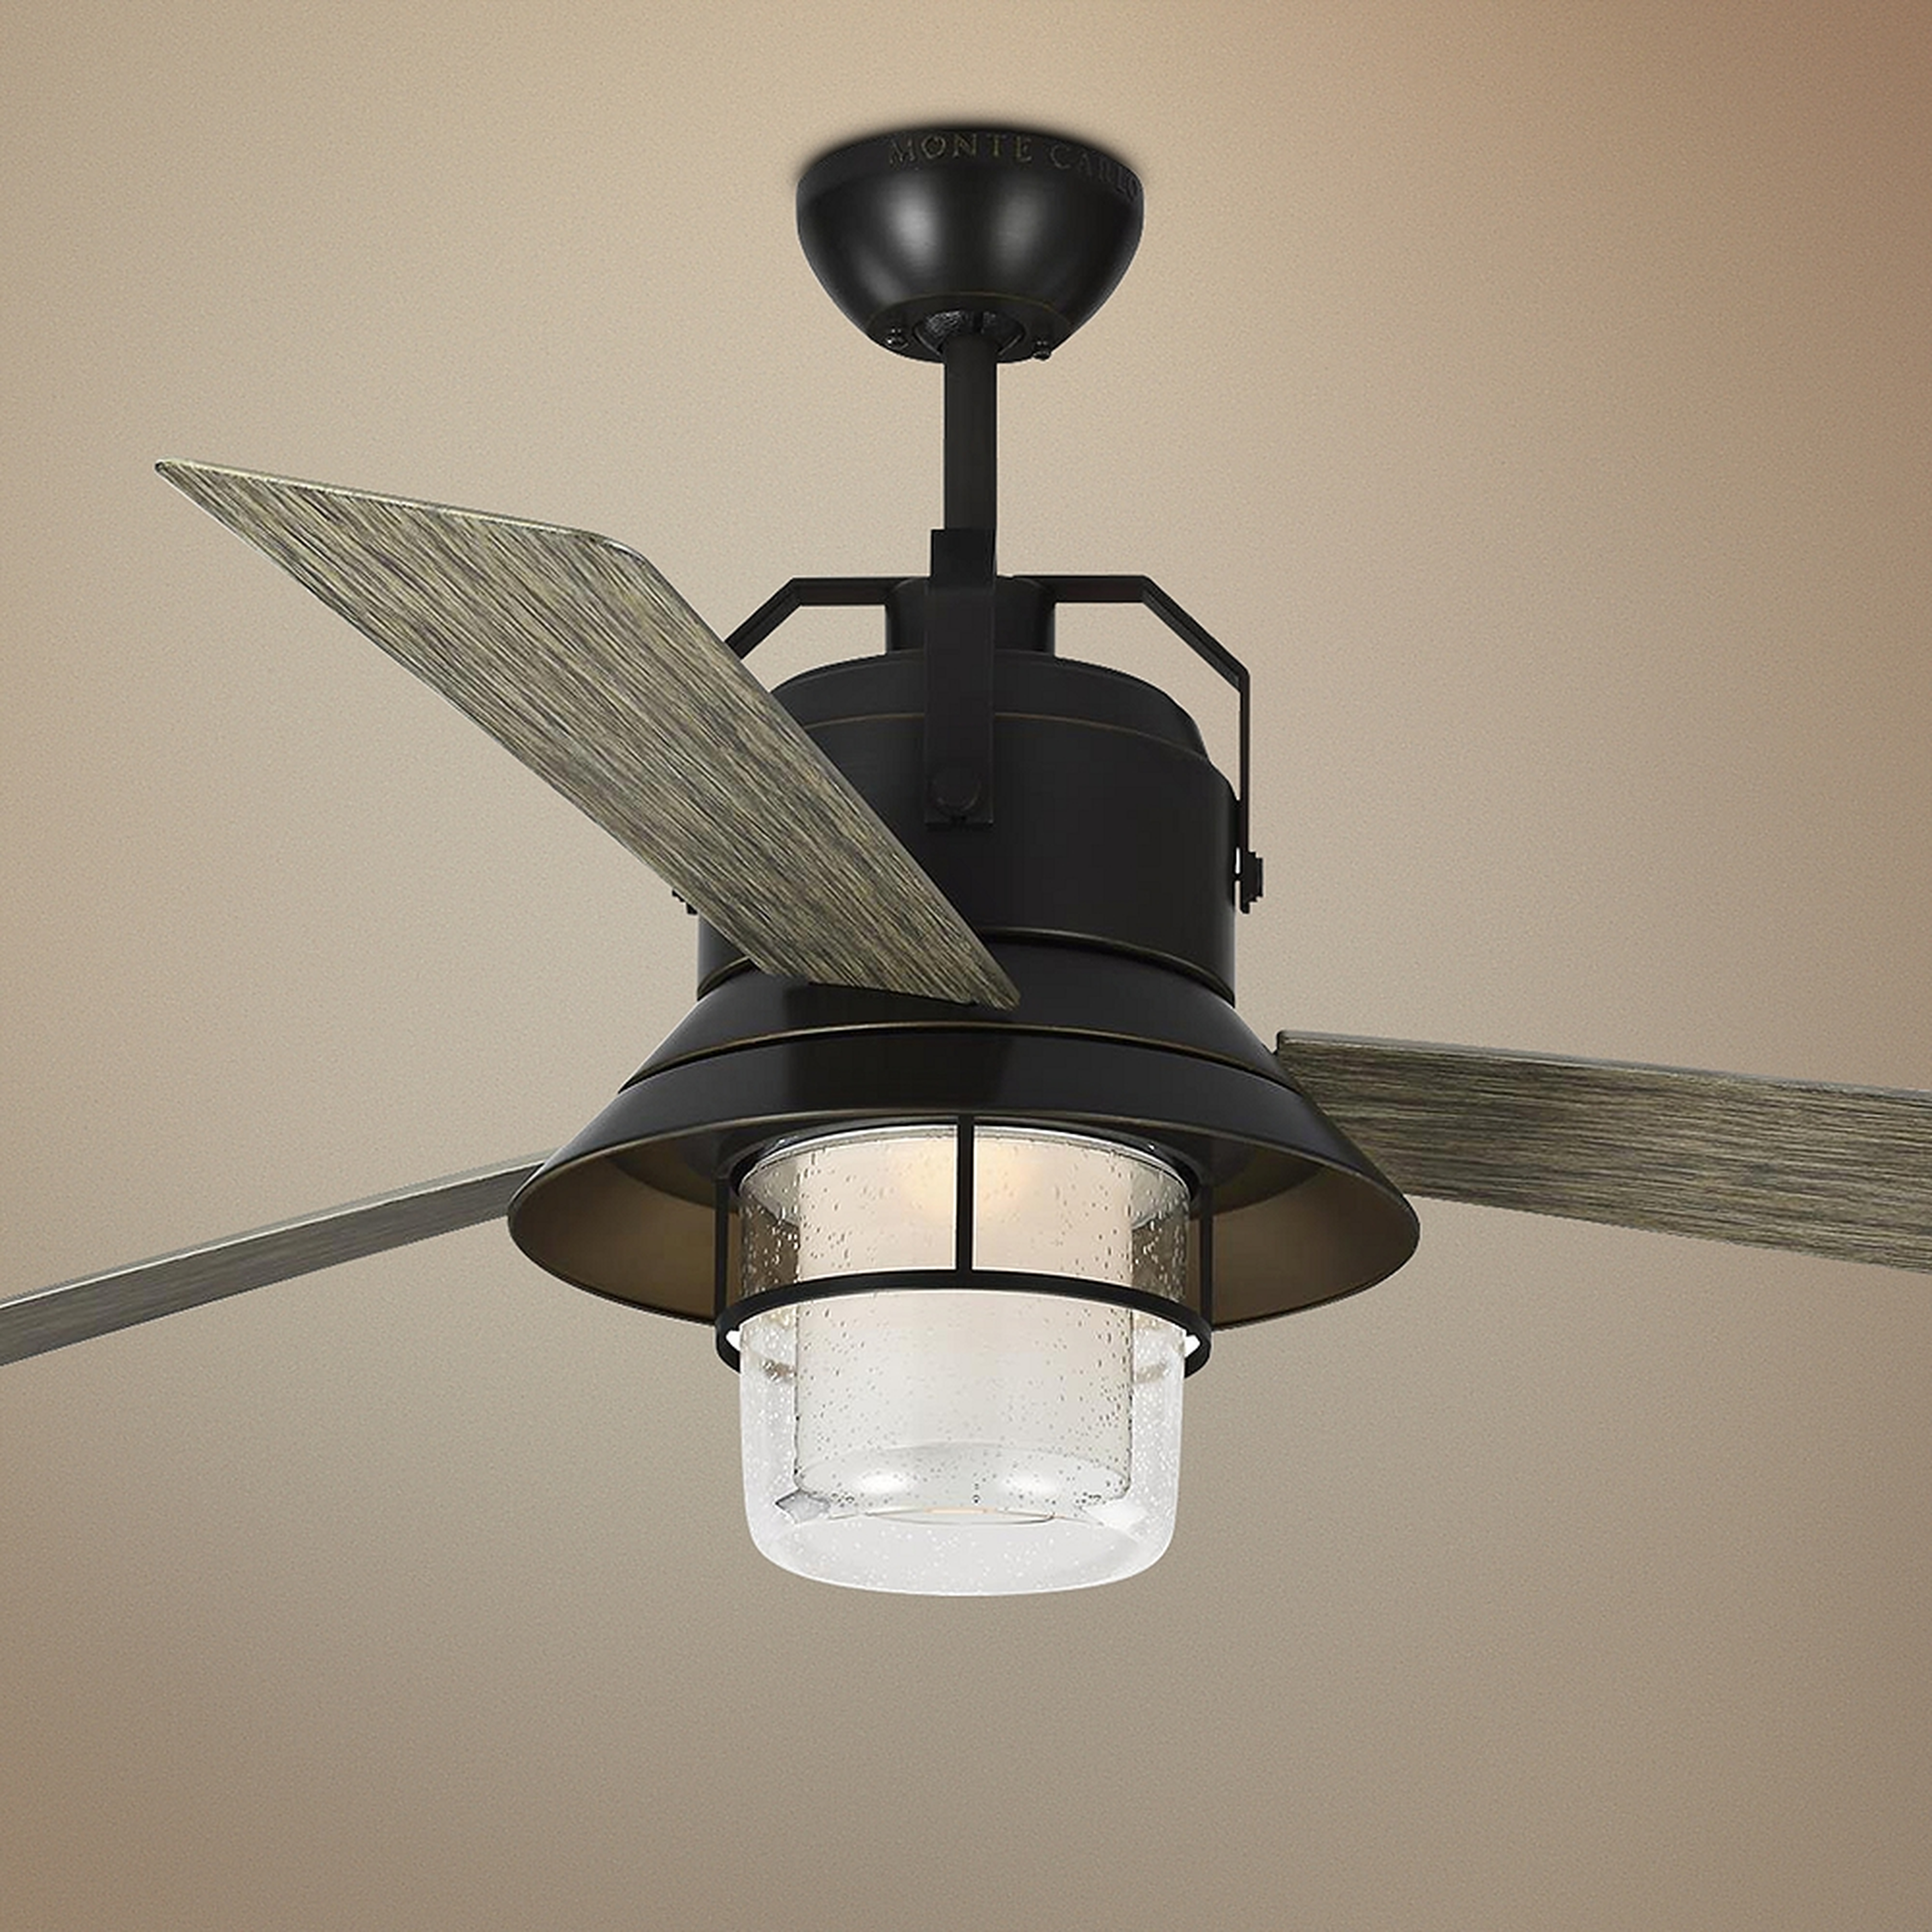 54" Boynton Antique Bronze LED Outdoor Ceiling Fan - Style # 71D97 - Lamps Plus